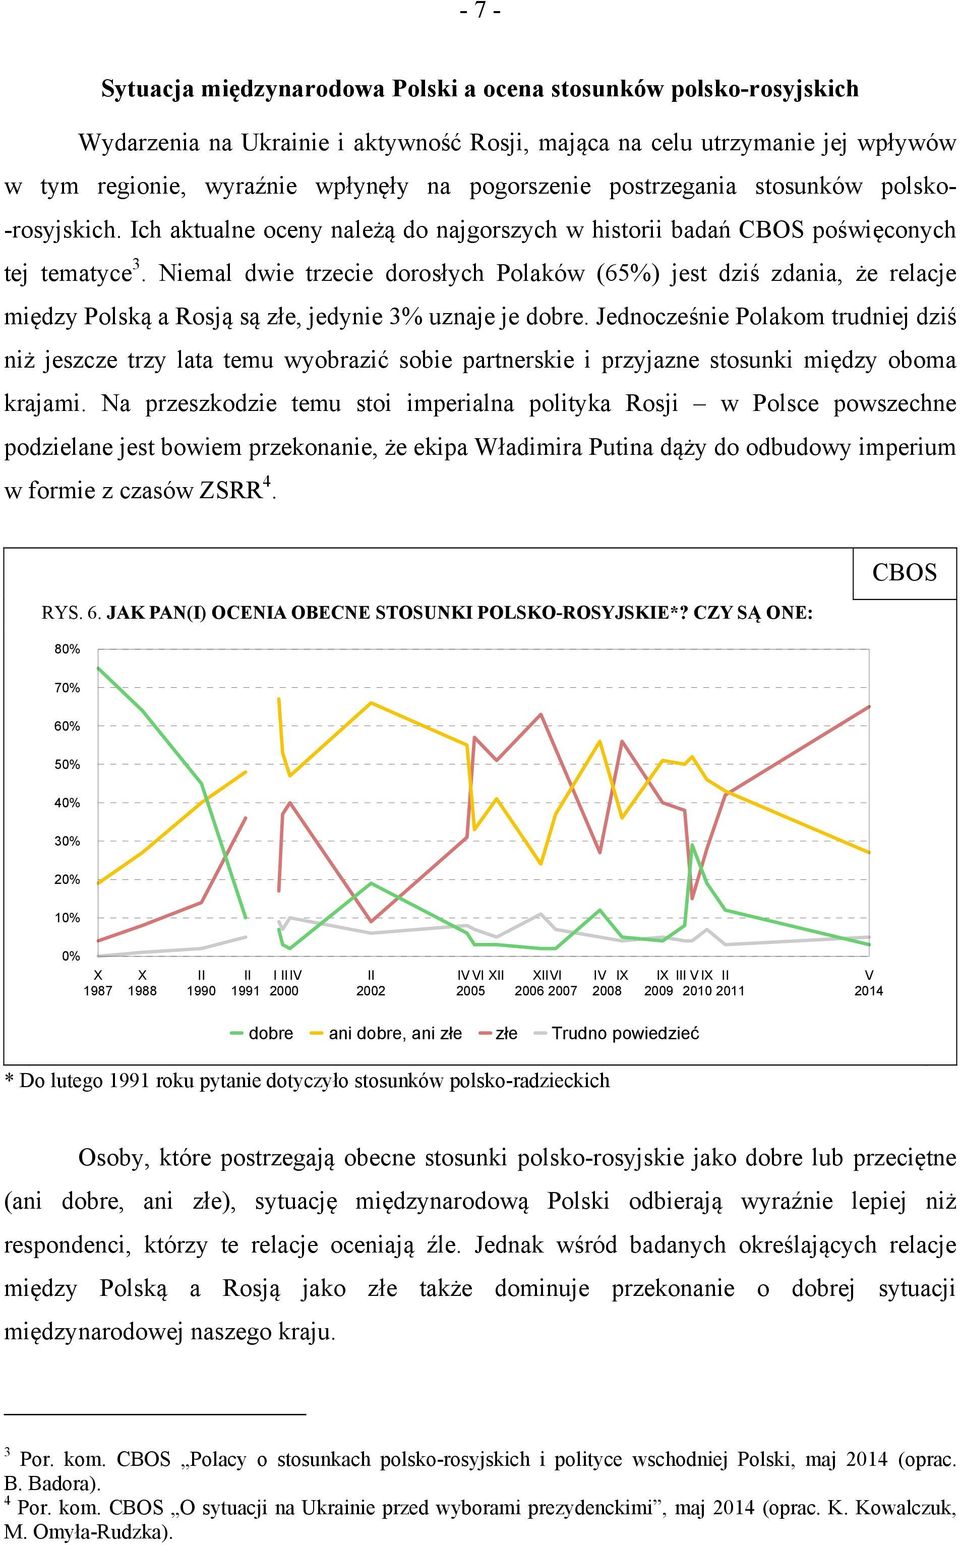 Niemal dwie trzecie dorosłych Polaków (65%) jest dziś zdania, że relacje między Polską a Rosją są złe, jedynie 3% uznaje je dobre.